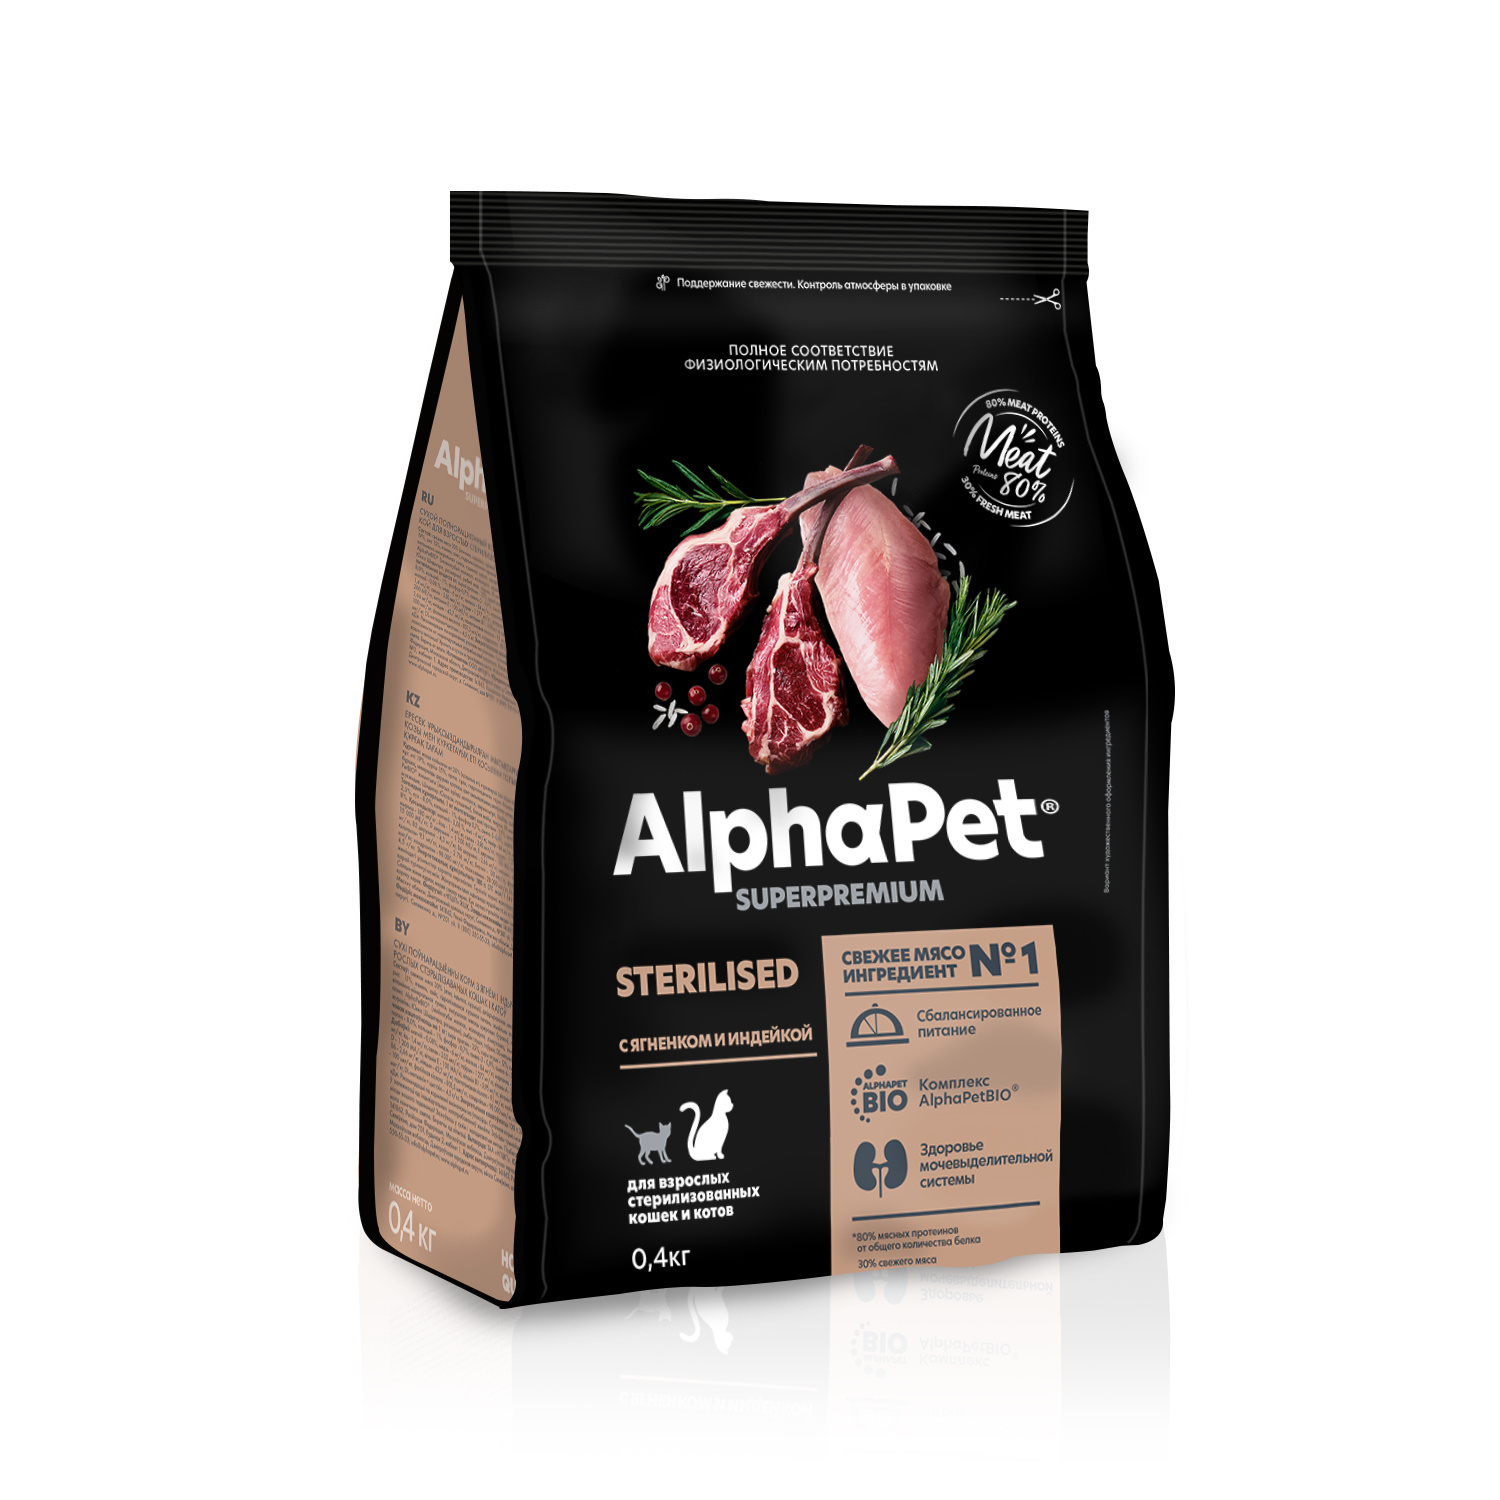 AlphaPet AlphaPet сухой полнорационный корм с ягненком и индейкой для взрослых стерилизованных кошек и котов (400 г) alphapet superpremium sterilised для стерилизованных кошек и котов с ягненком и индейкой